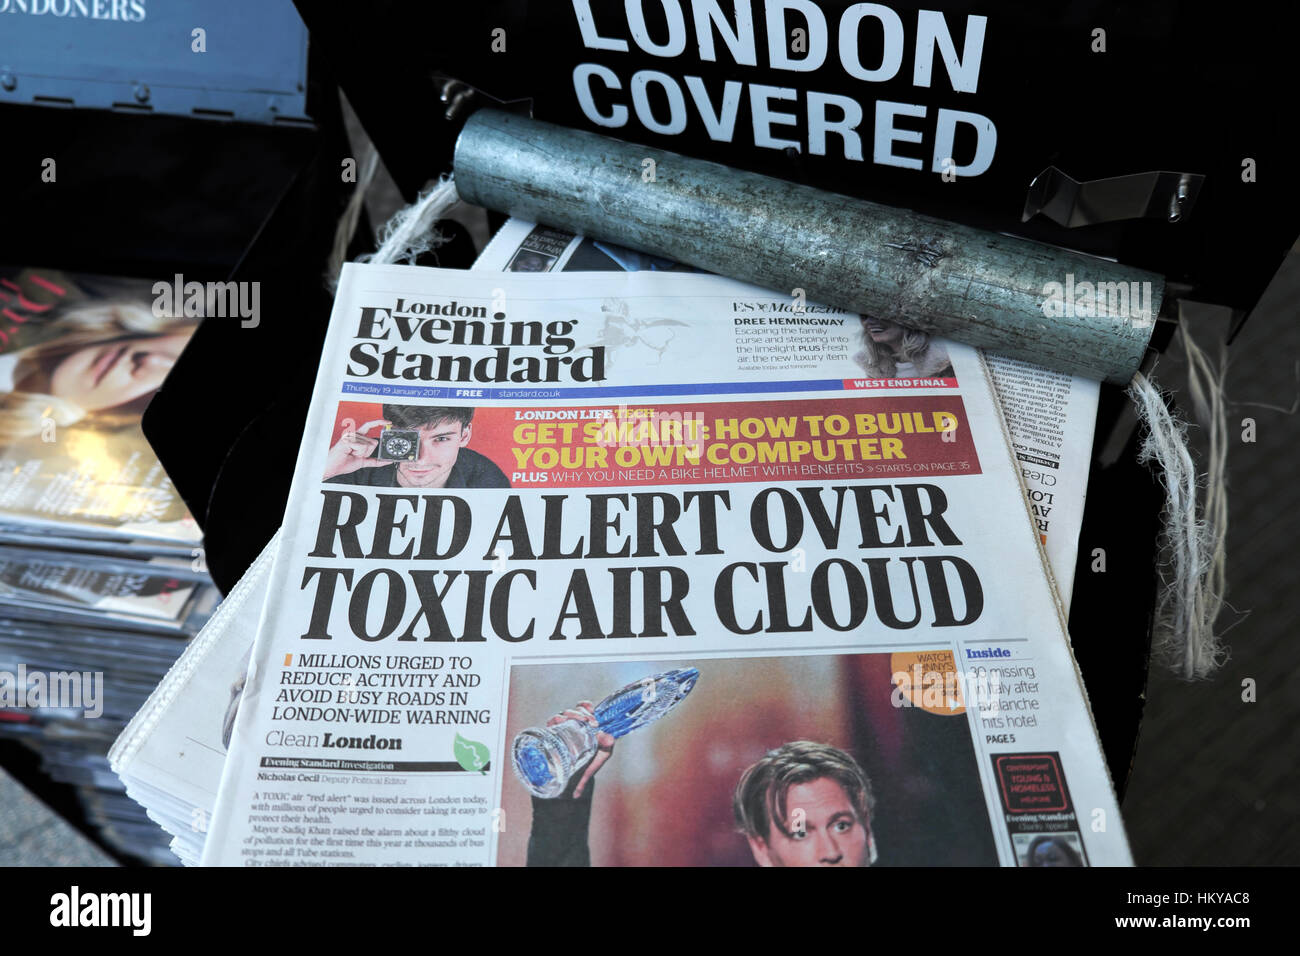 Evening Standard Front page Headline News Enero 2017 periódico peligrosos niveles de contaminación del aire "alerta roja de advertencia sobre la Nube de aire tóxico' de Londres Reino unido Foto de stock